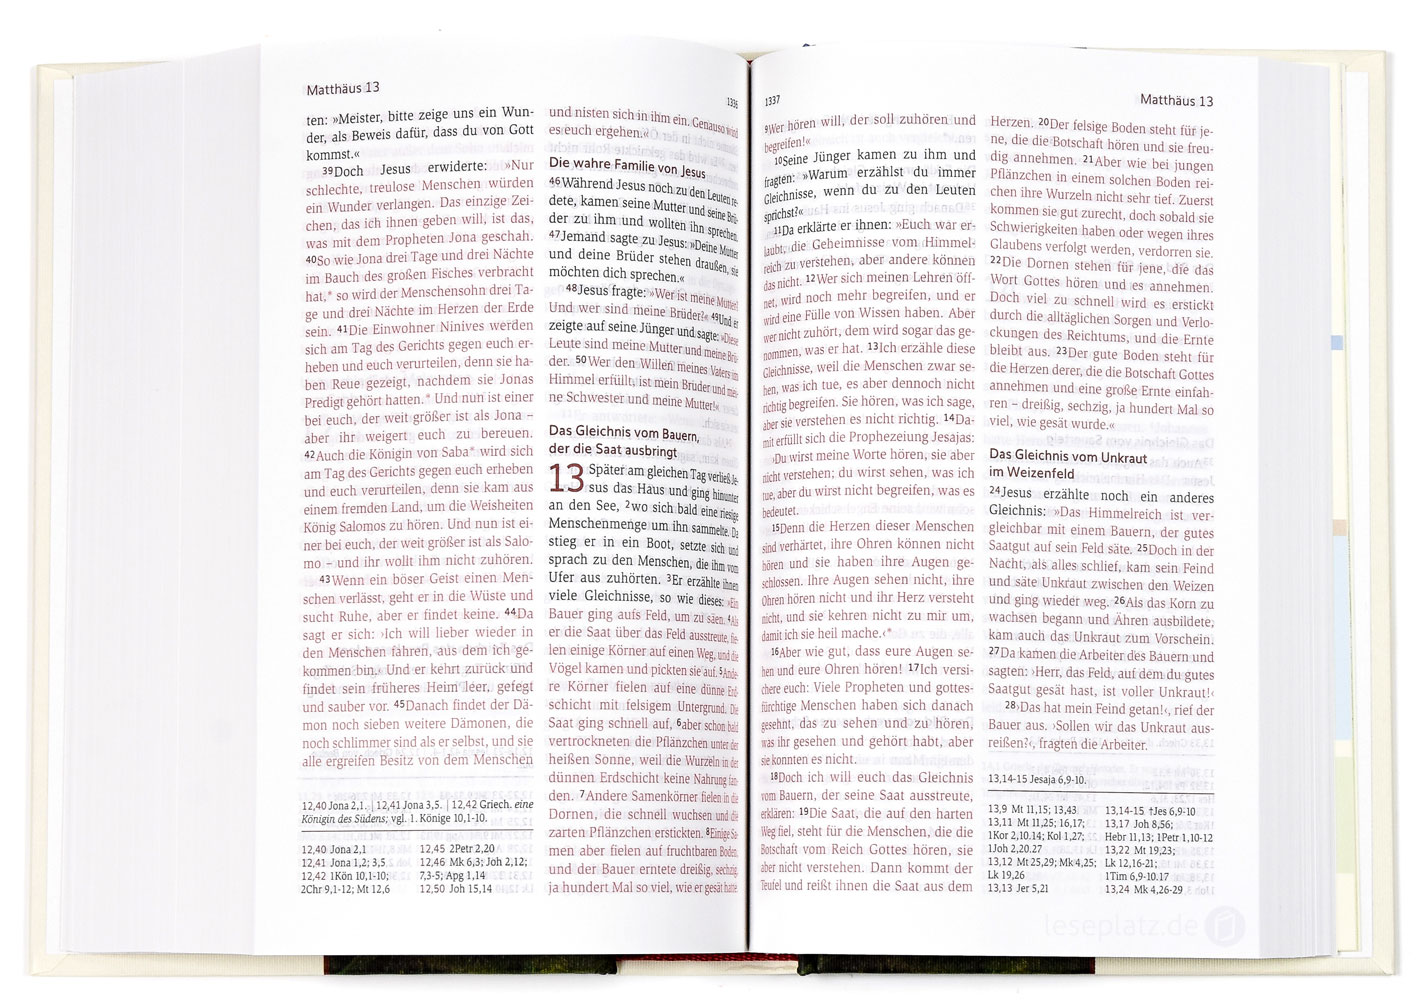 Neues Leben. Die Bibel - Taschenausgabe Motiv "Leuchtturm"